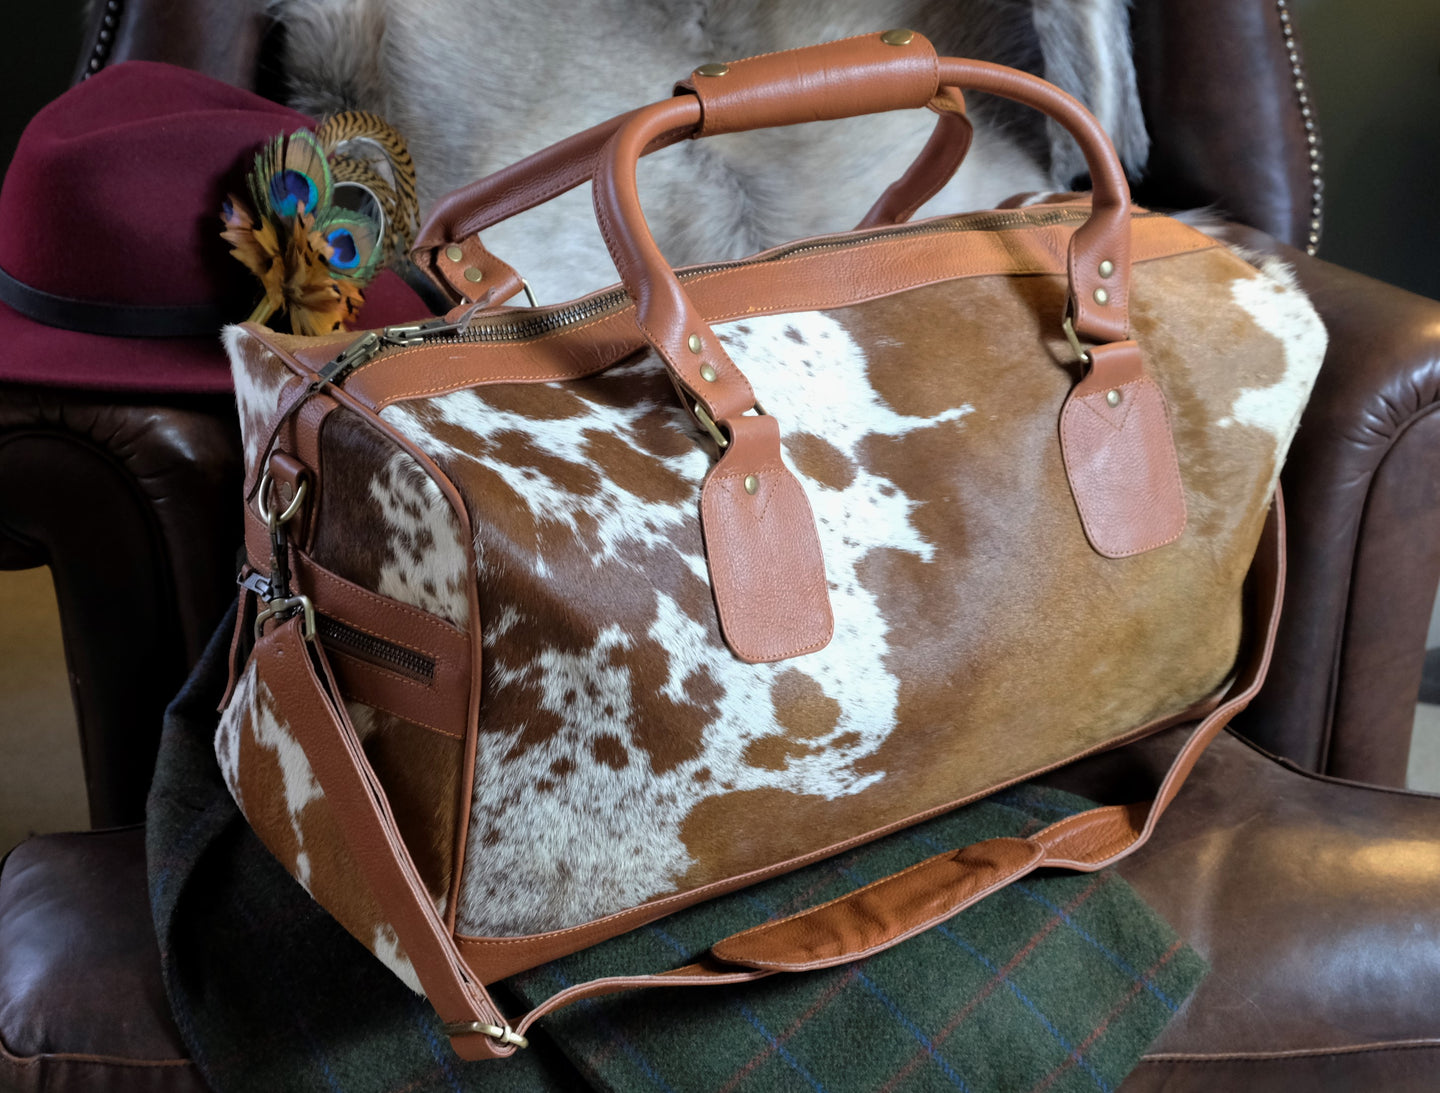 The Graceford Tan Cowhide Weekend Bag